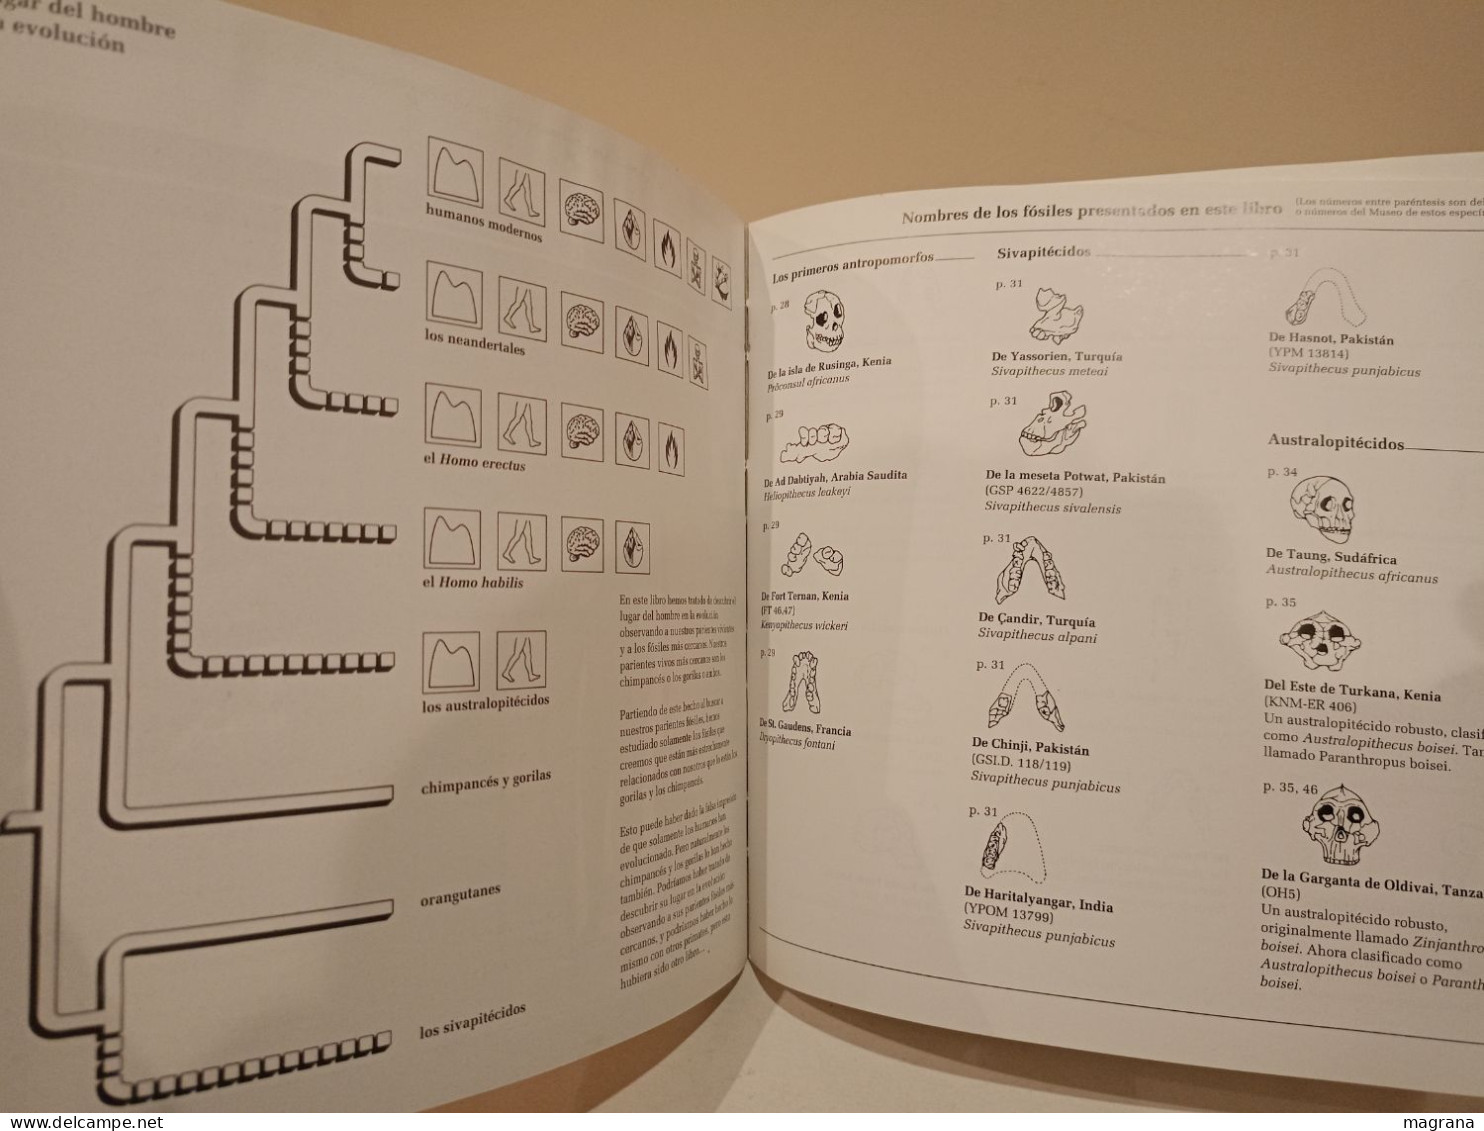 El lugar del hombre en la evolución. Akal. Natural History Museum. 1994. 102 páginas.